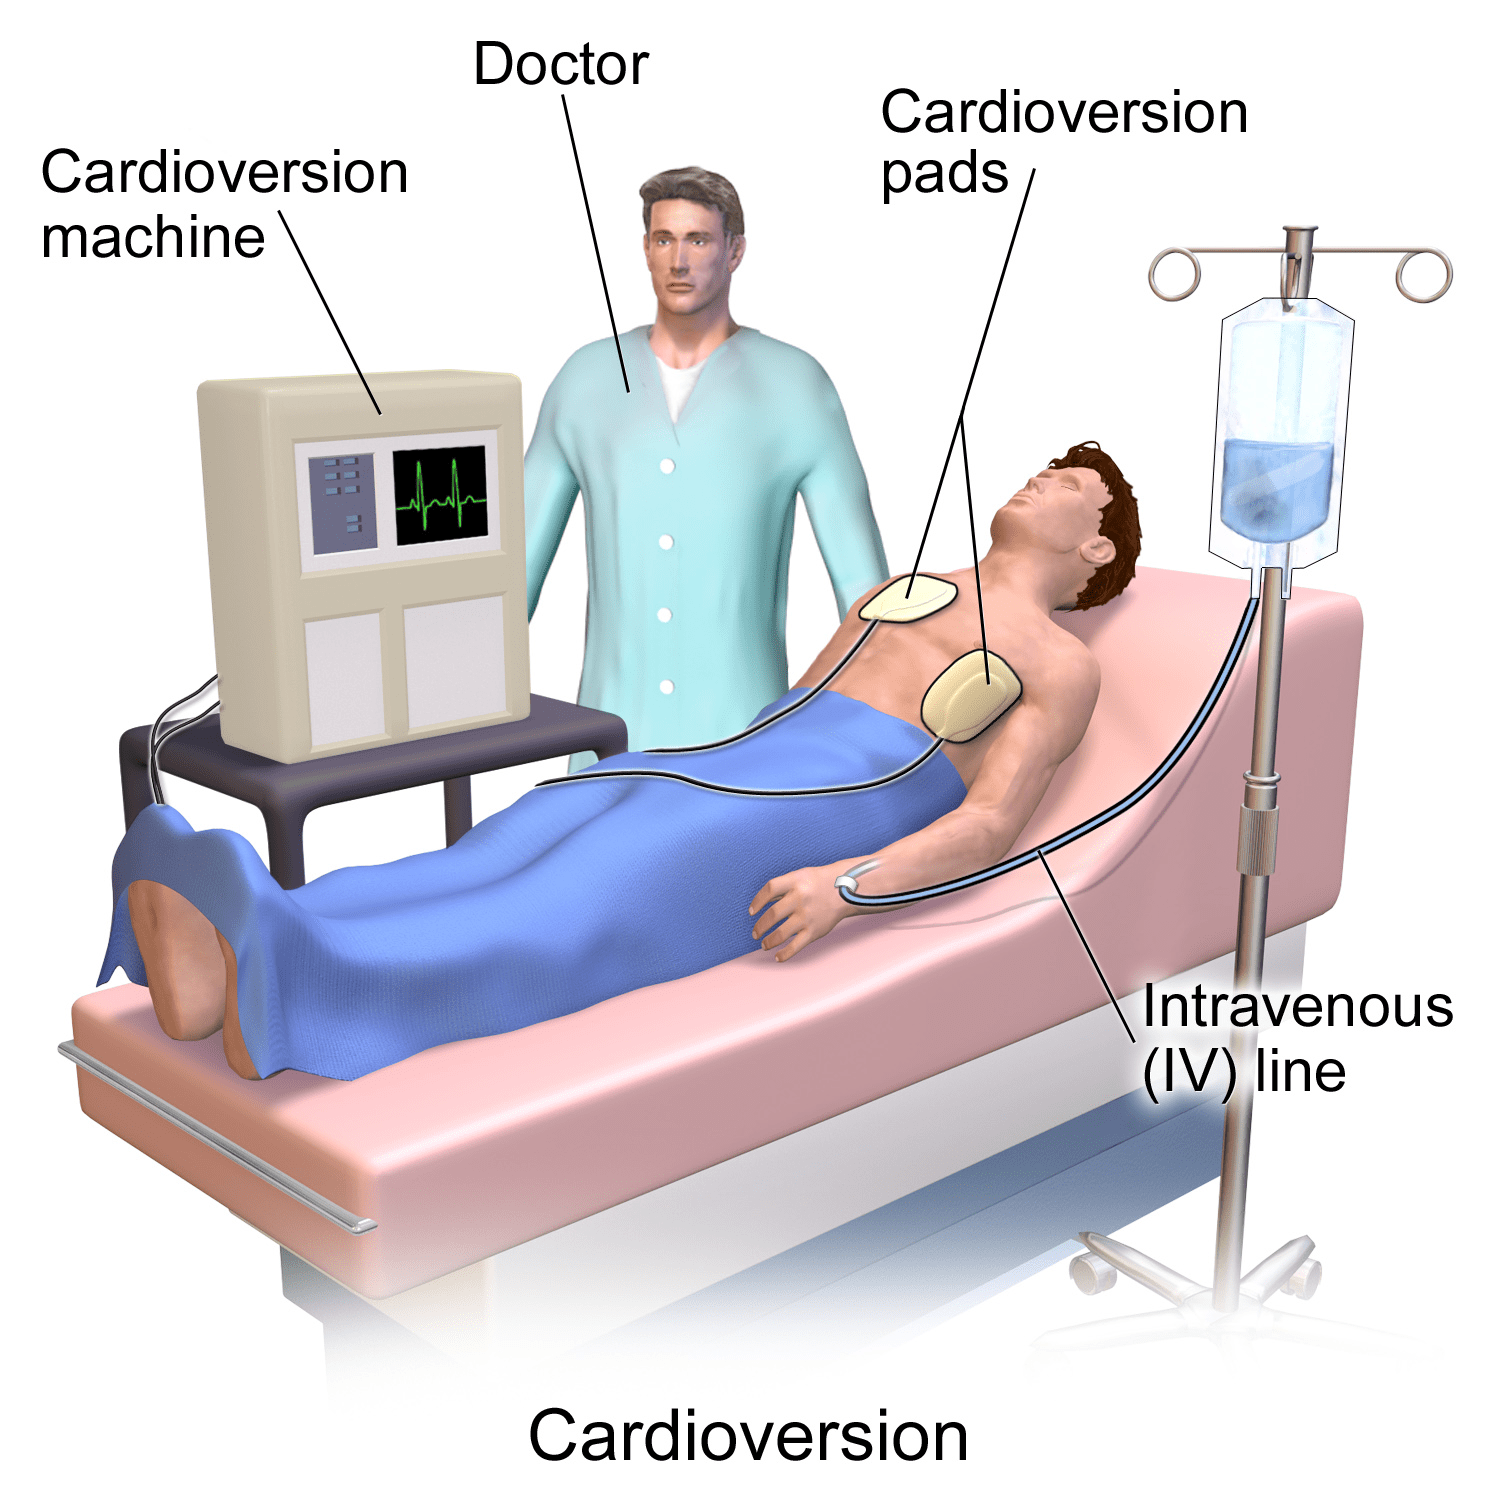 kardioversioon